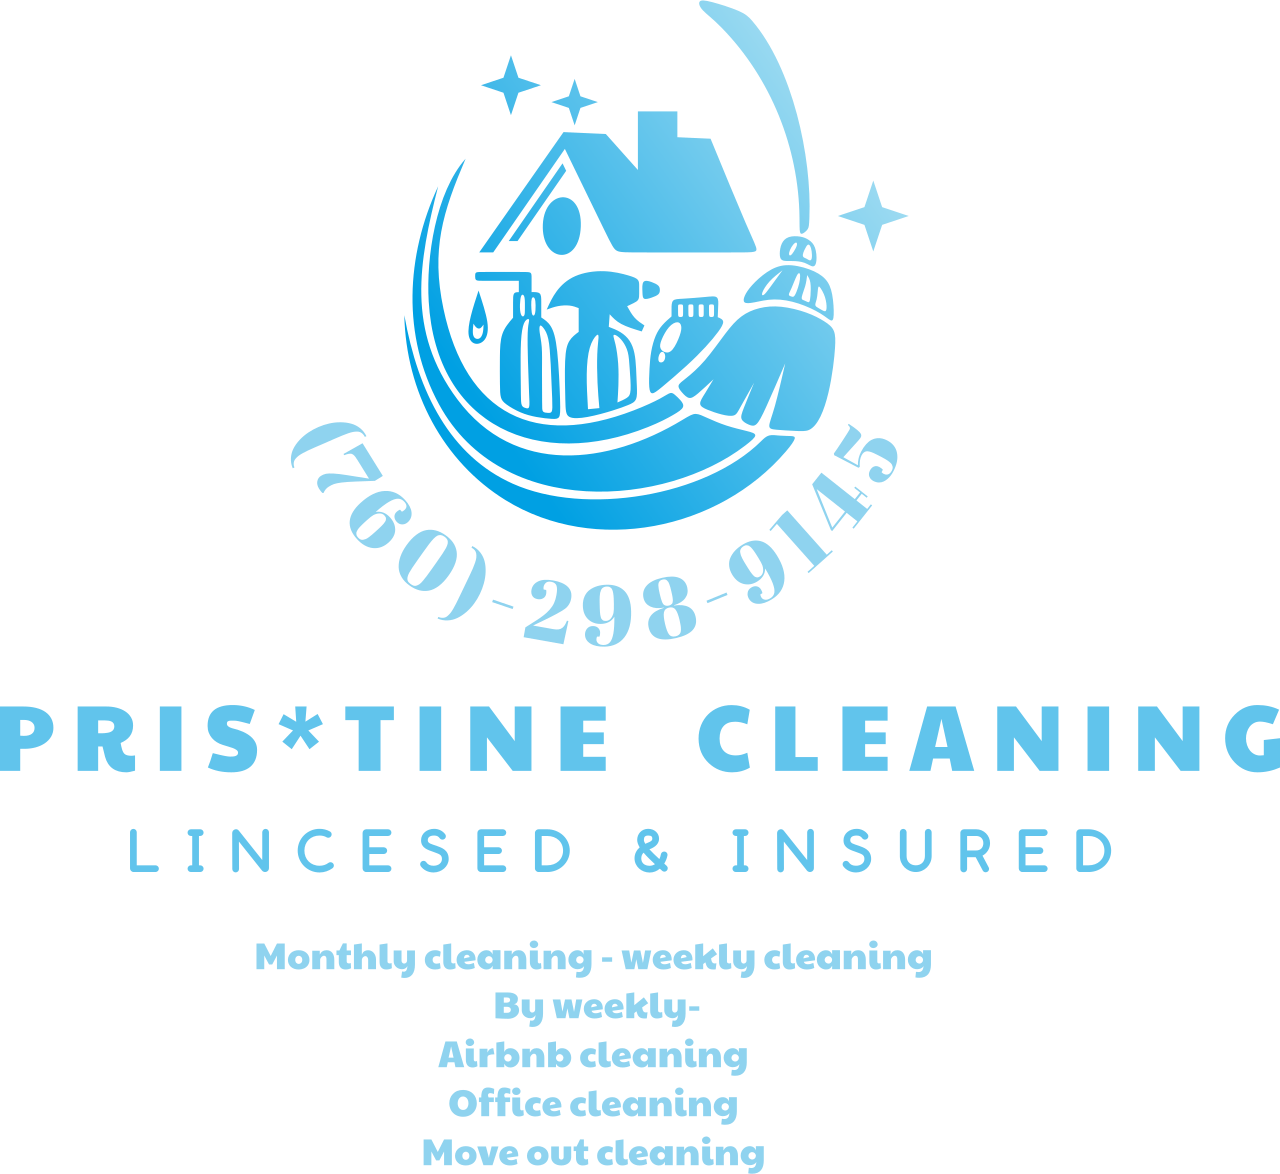 Pris*tine  cleaning 's logo